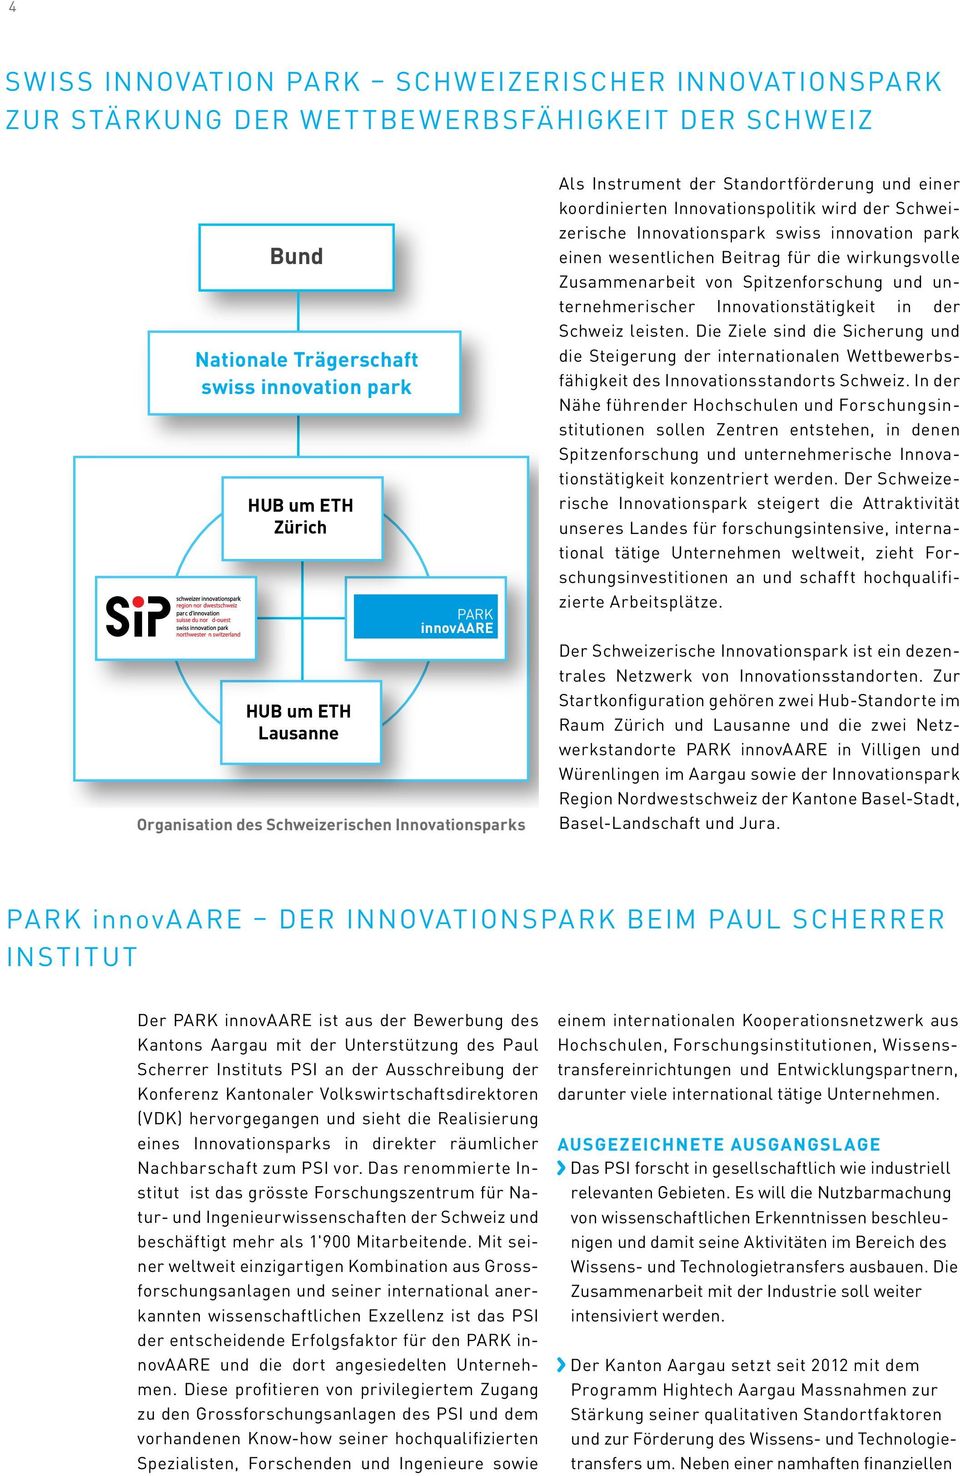 park einen wesentlichen Beitrag für die wirkungsvolle Zusammenarbeit von Spitzenforschung und unternehmerischer Innovationstätigkeit in der Schweiz leisten.